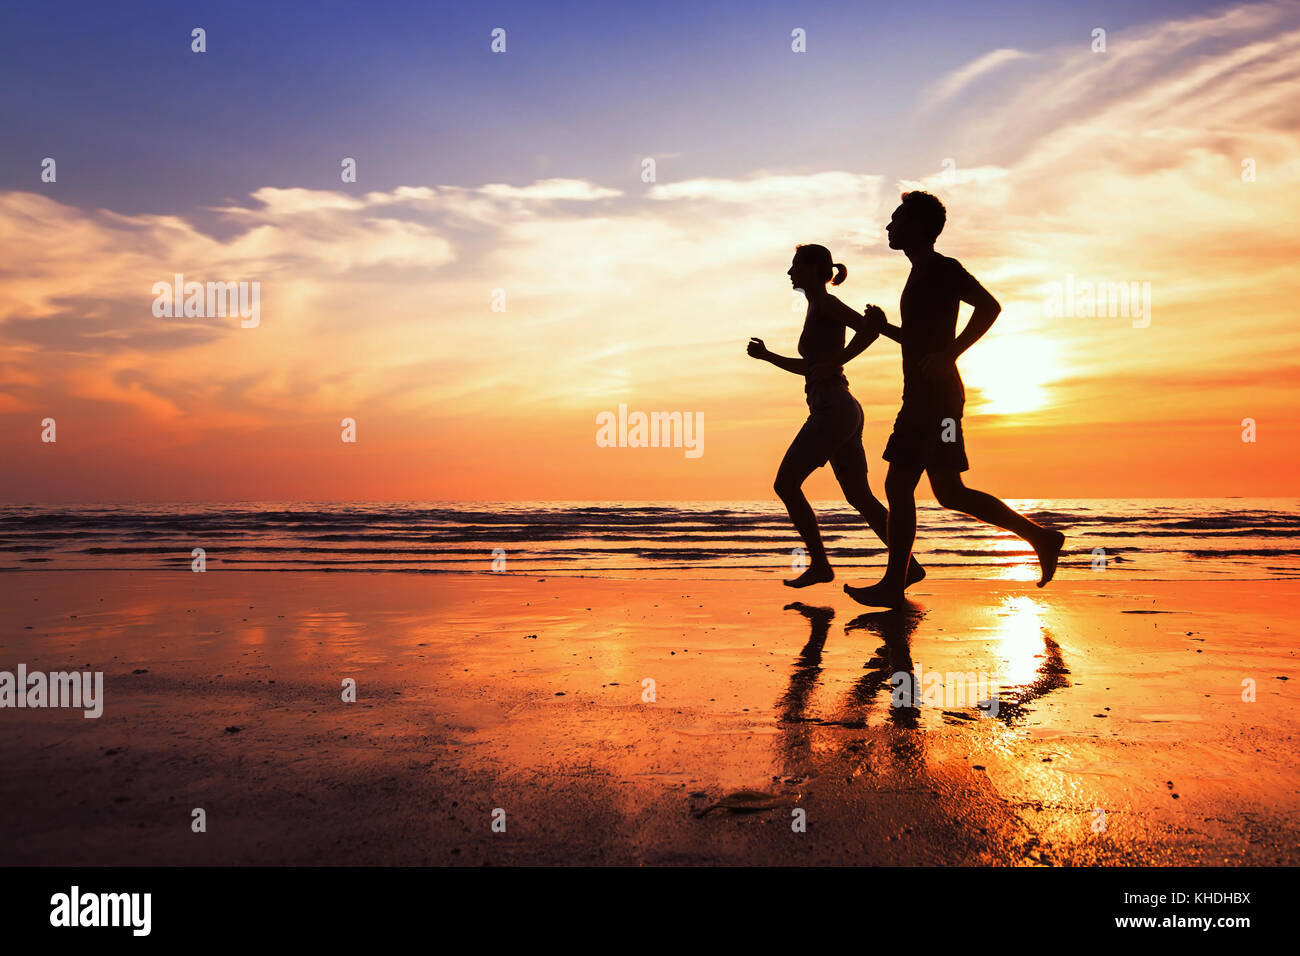 Im Hintergrund, Sport und Training, Silhouetten von Menschen joggen am sunset beach Stockfoto